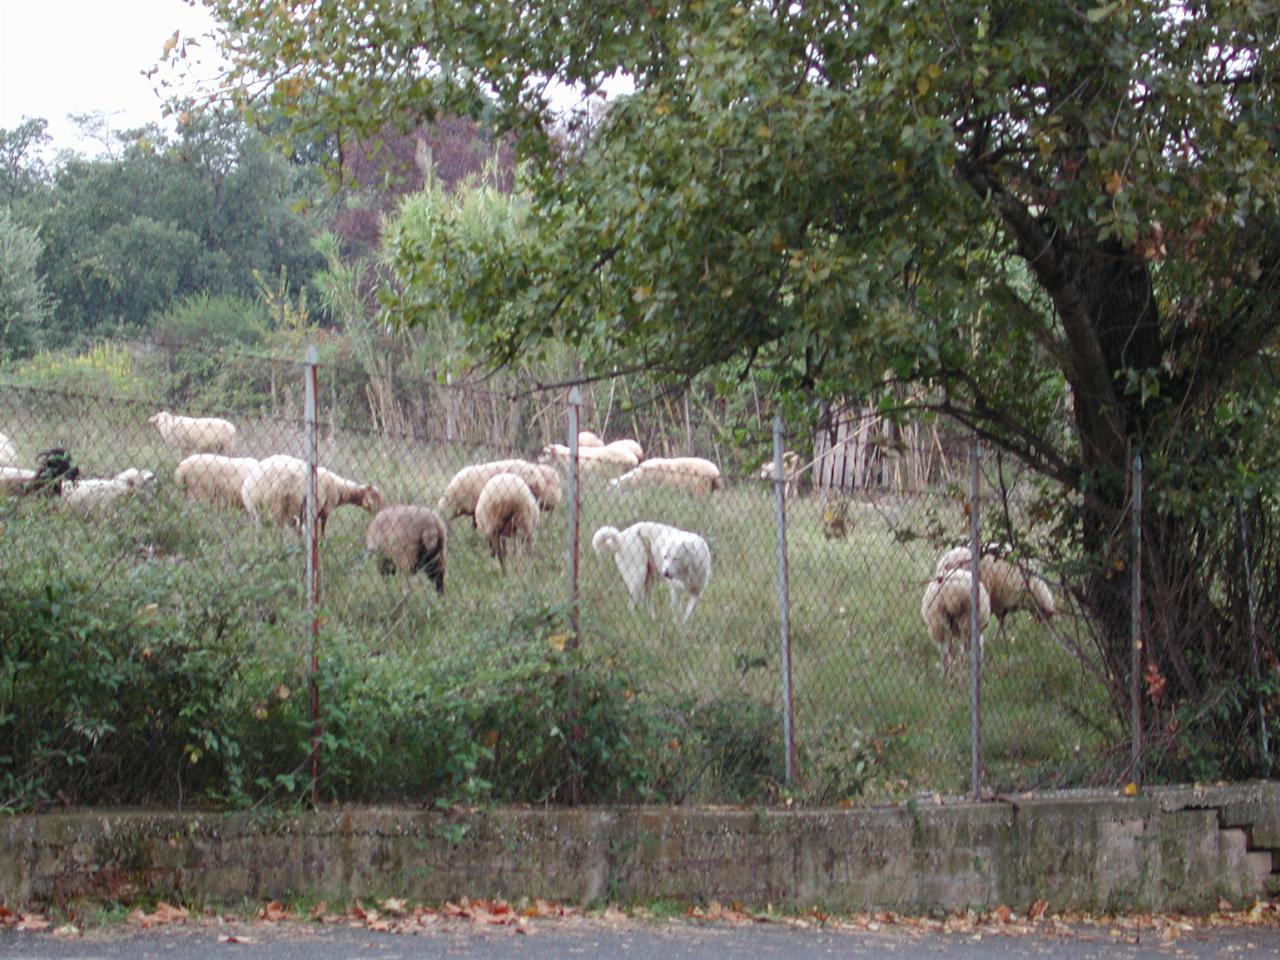 Sheep dog and sheep adajacent to Aurelia Gardens hotel